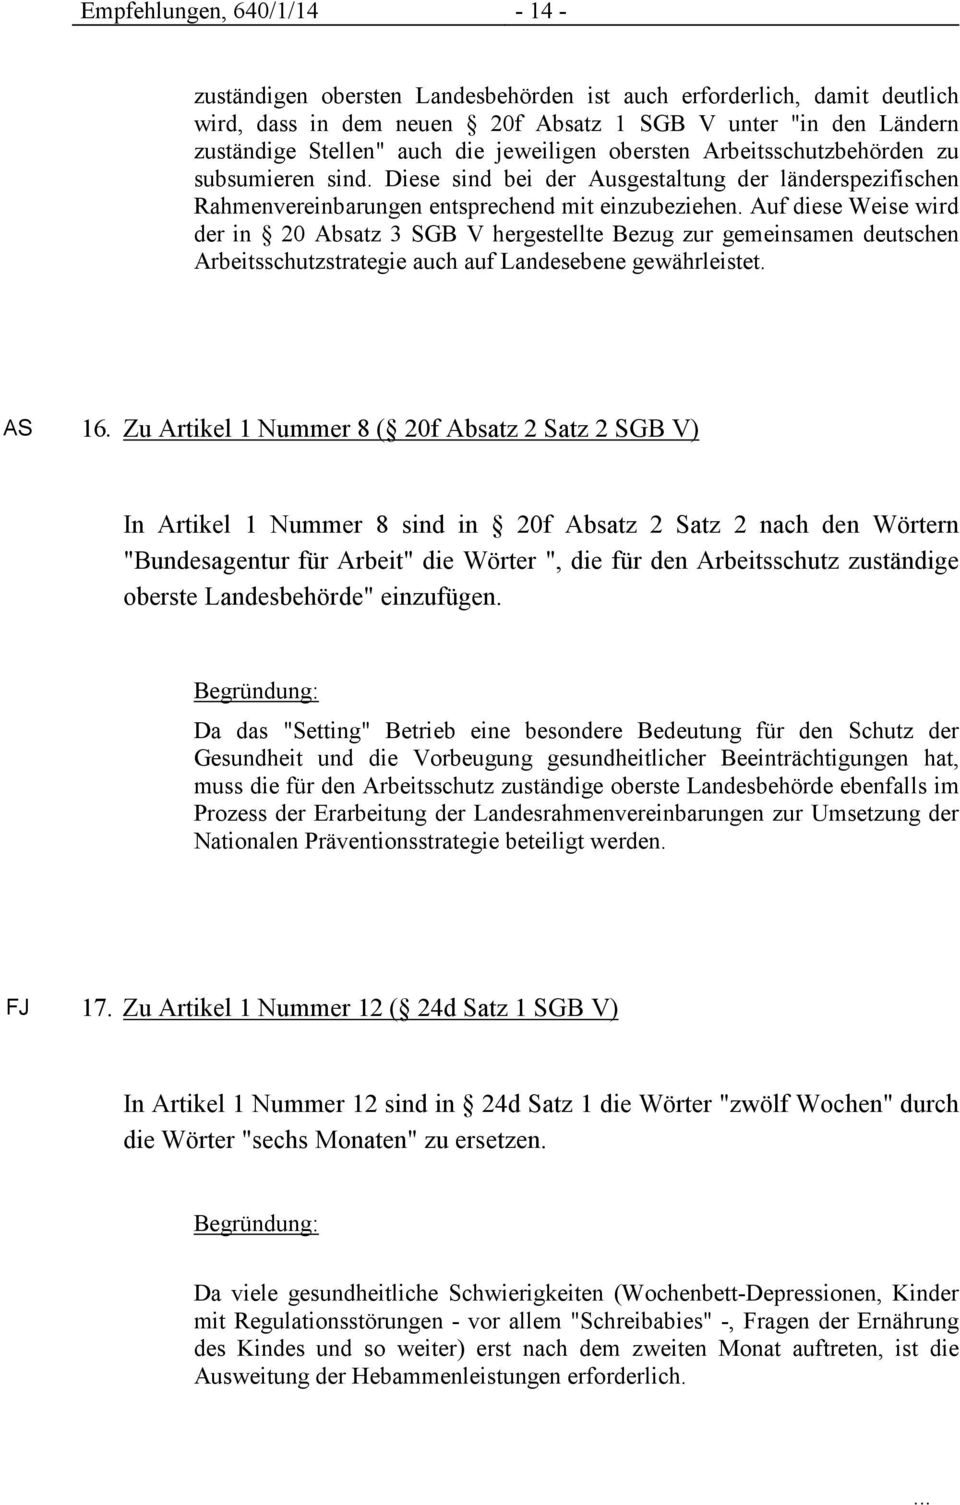 Auf diese Weise wird der in 20 Absatz 3 SB V hergestellte Bezug zur gemeinsamen deutschen Arbeitsschutzstrategie auch auf Landesebene gewährleistet. AS 16.